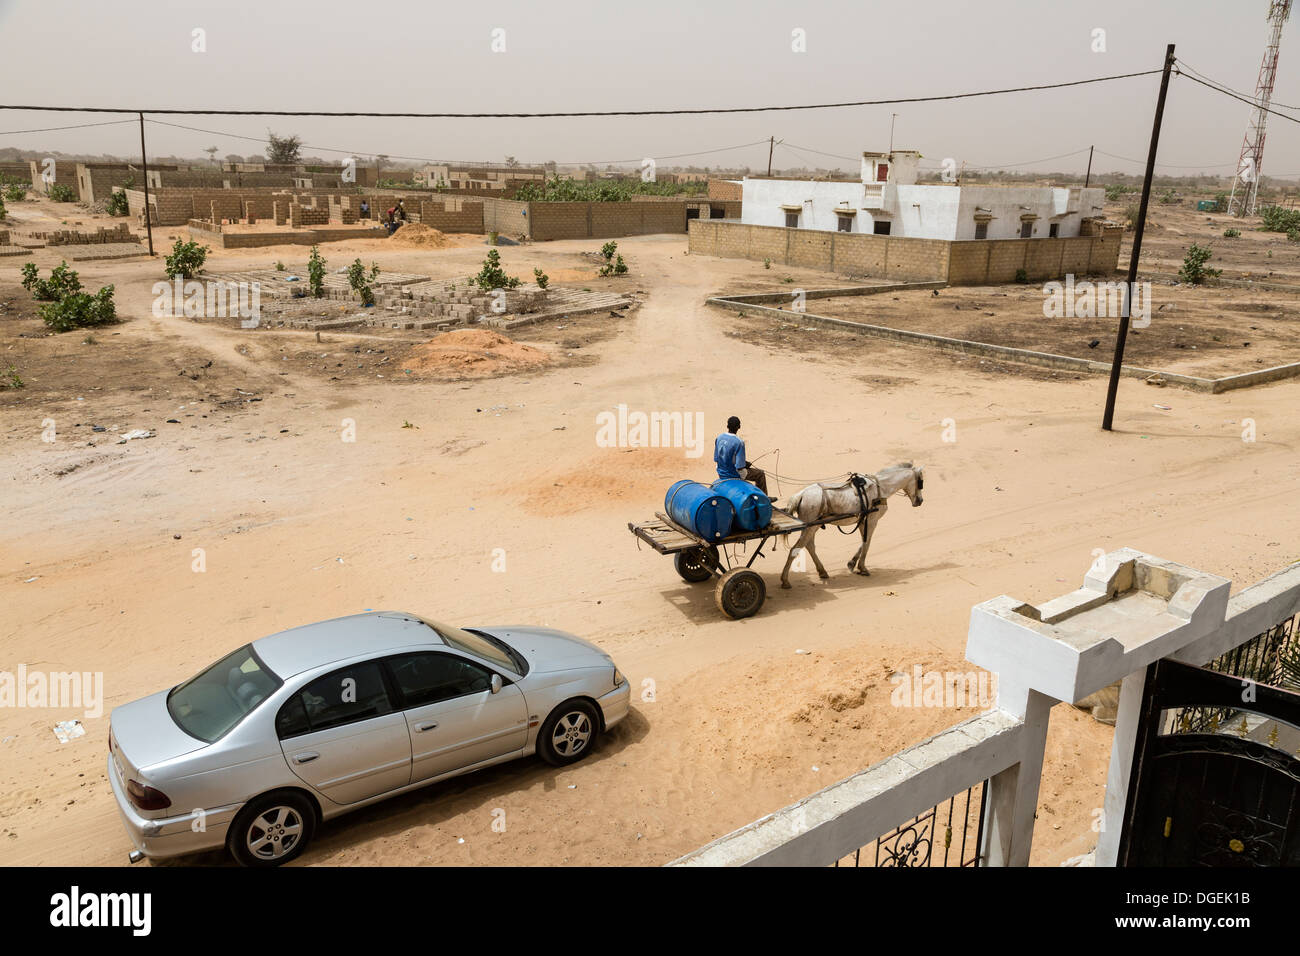 Le Sénégal, Tivaouane. Chariot fournit de l'eau dans des barils de nouvelles maisons que la ville se développe. Banque D'Images